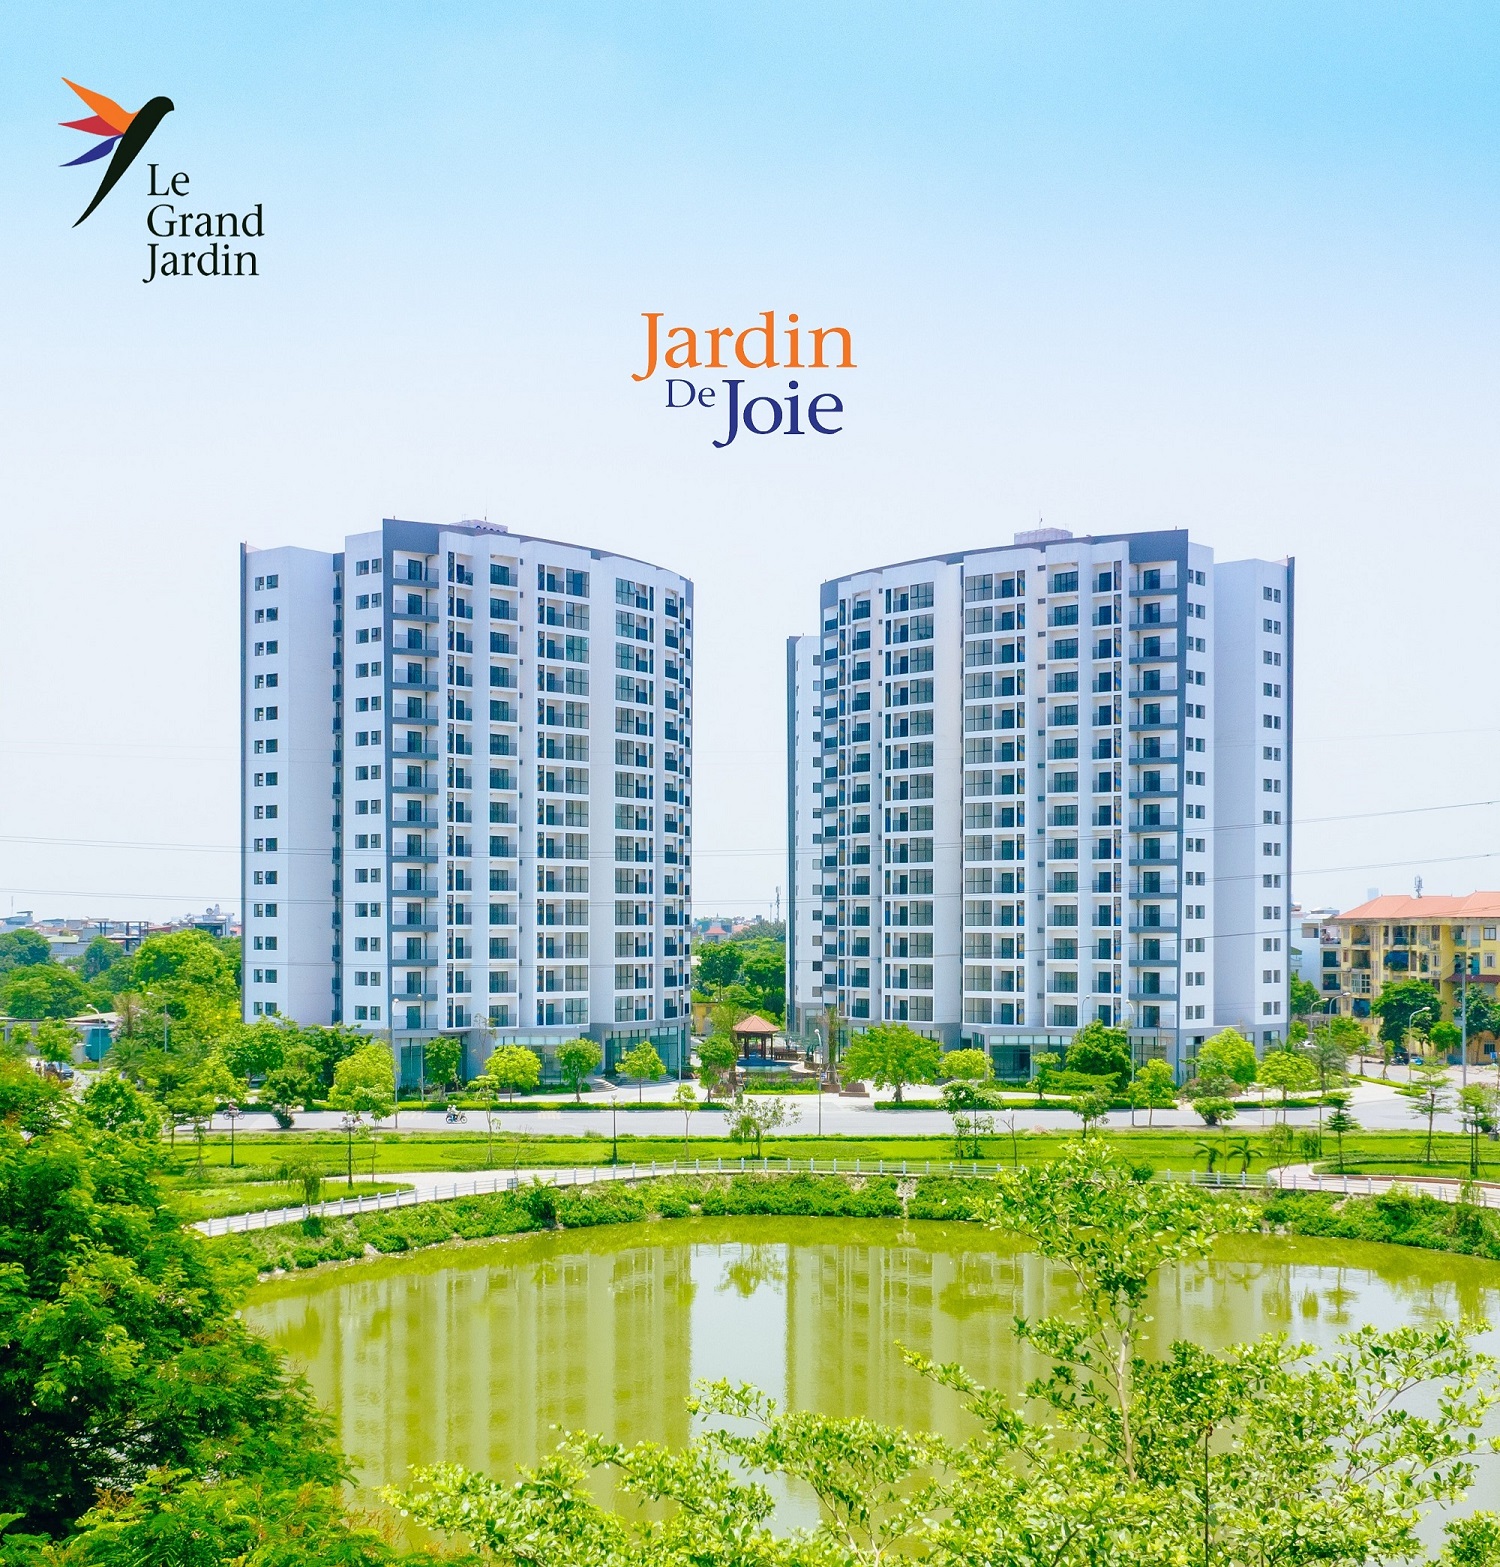 Các chủ nhân căn hộ tại tổ hợp căn hộ cao cấp Le Grand Jardin (Sài Đồng, Long Biên) đều đánh giá cao không gian xanh rộng lớn, căn hộ đa tiện ích và phong cách sống văn minh, hiện đại tại một trong những tổ hợp căn hộ cao cấp nổi bật nhất khu vực phía Đông của Thủ đô.